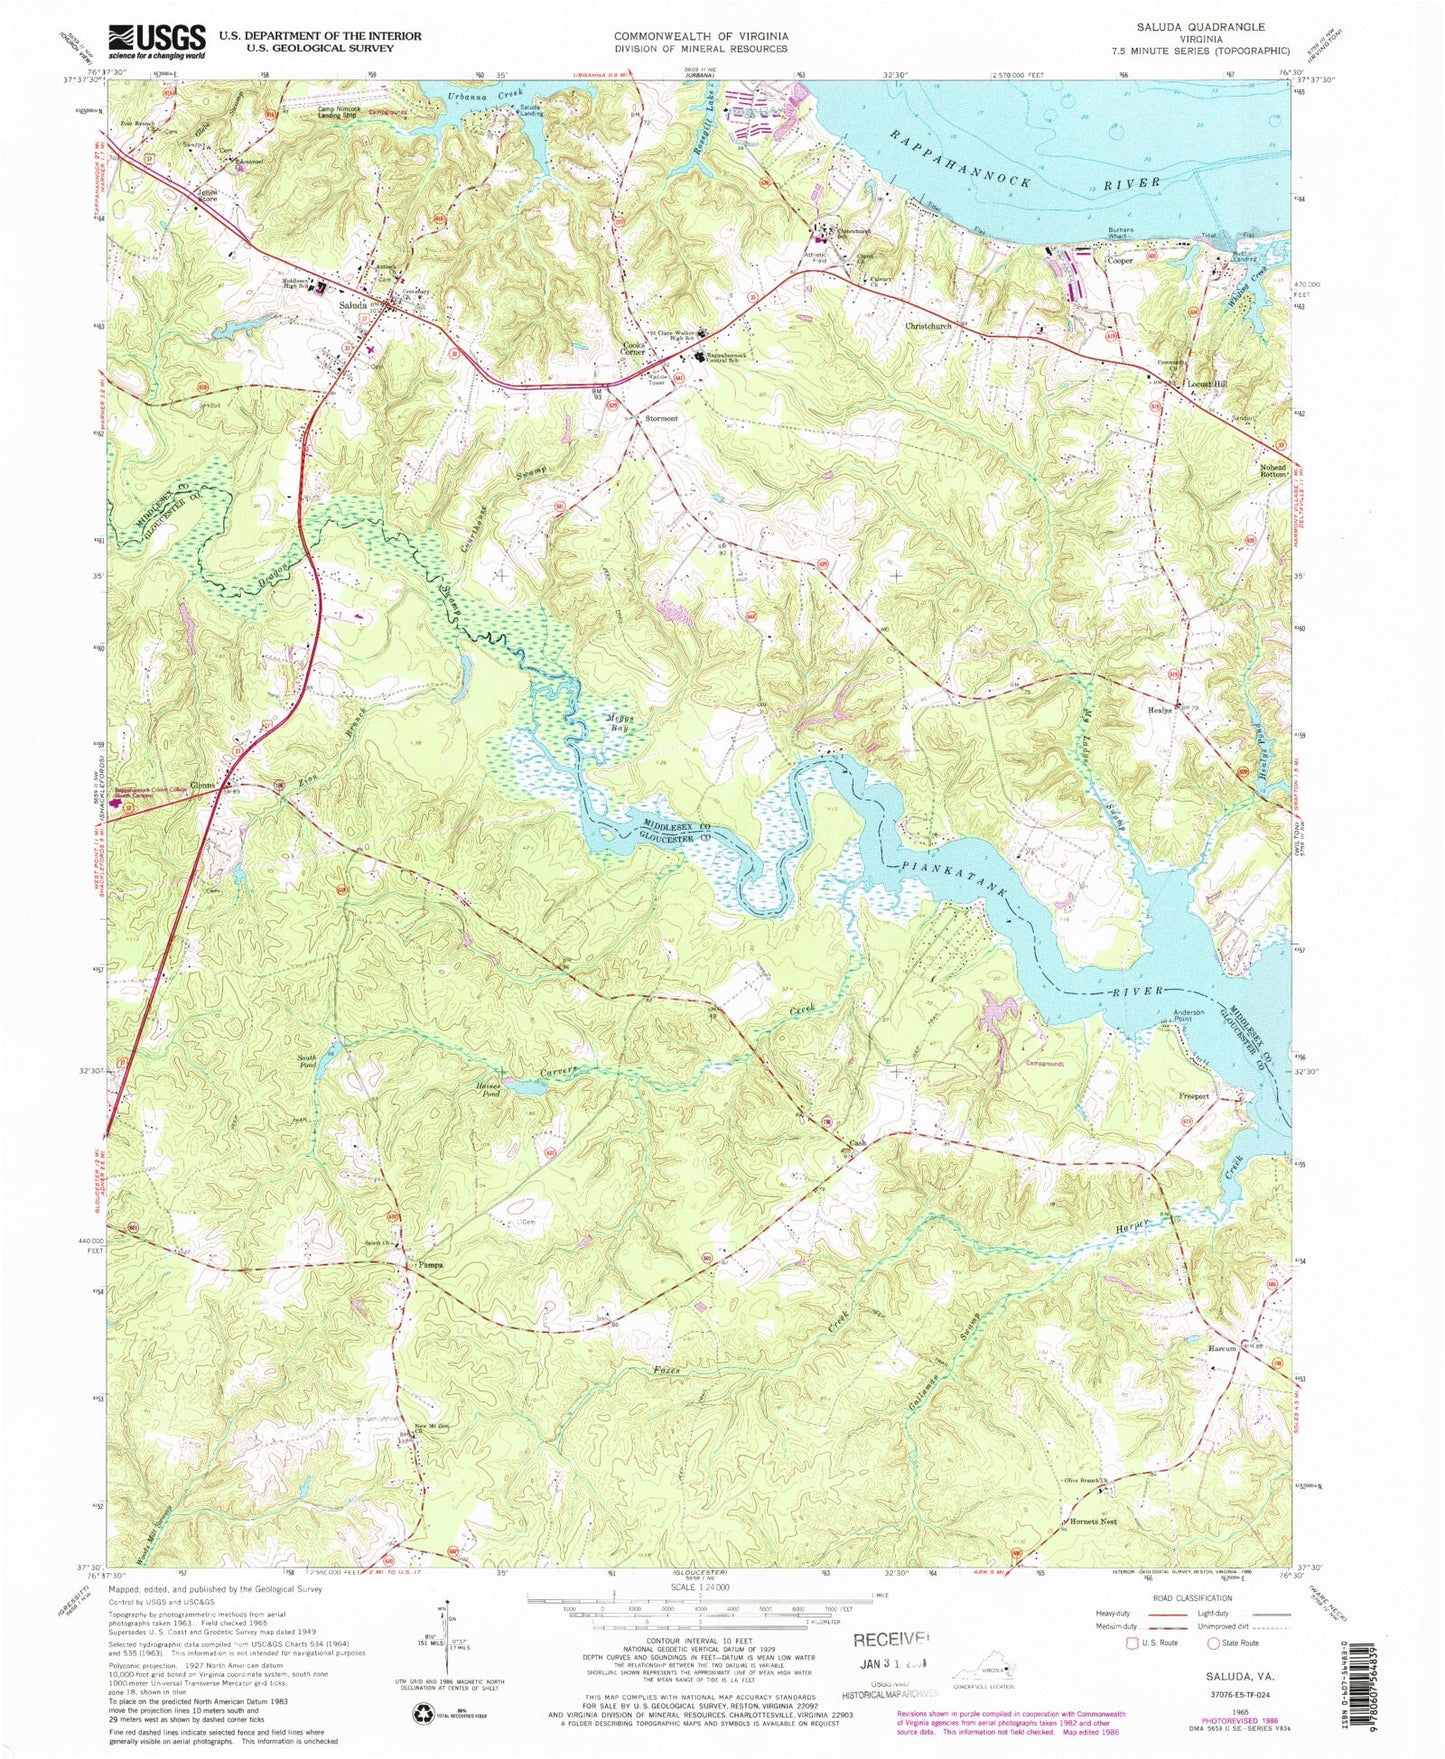 Classic USGS Saluda Virginia 7.5'x7.5' Topo Map Image